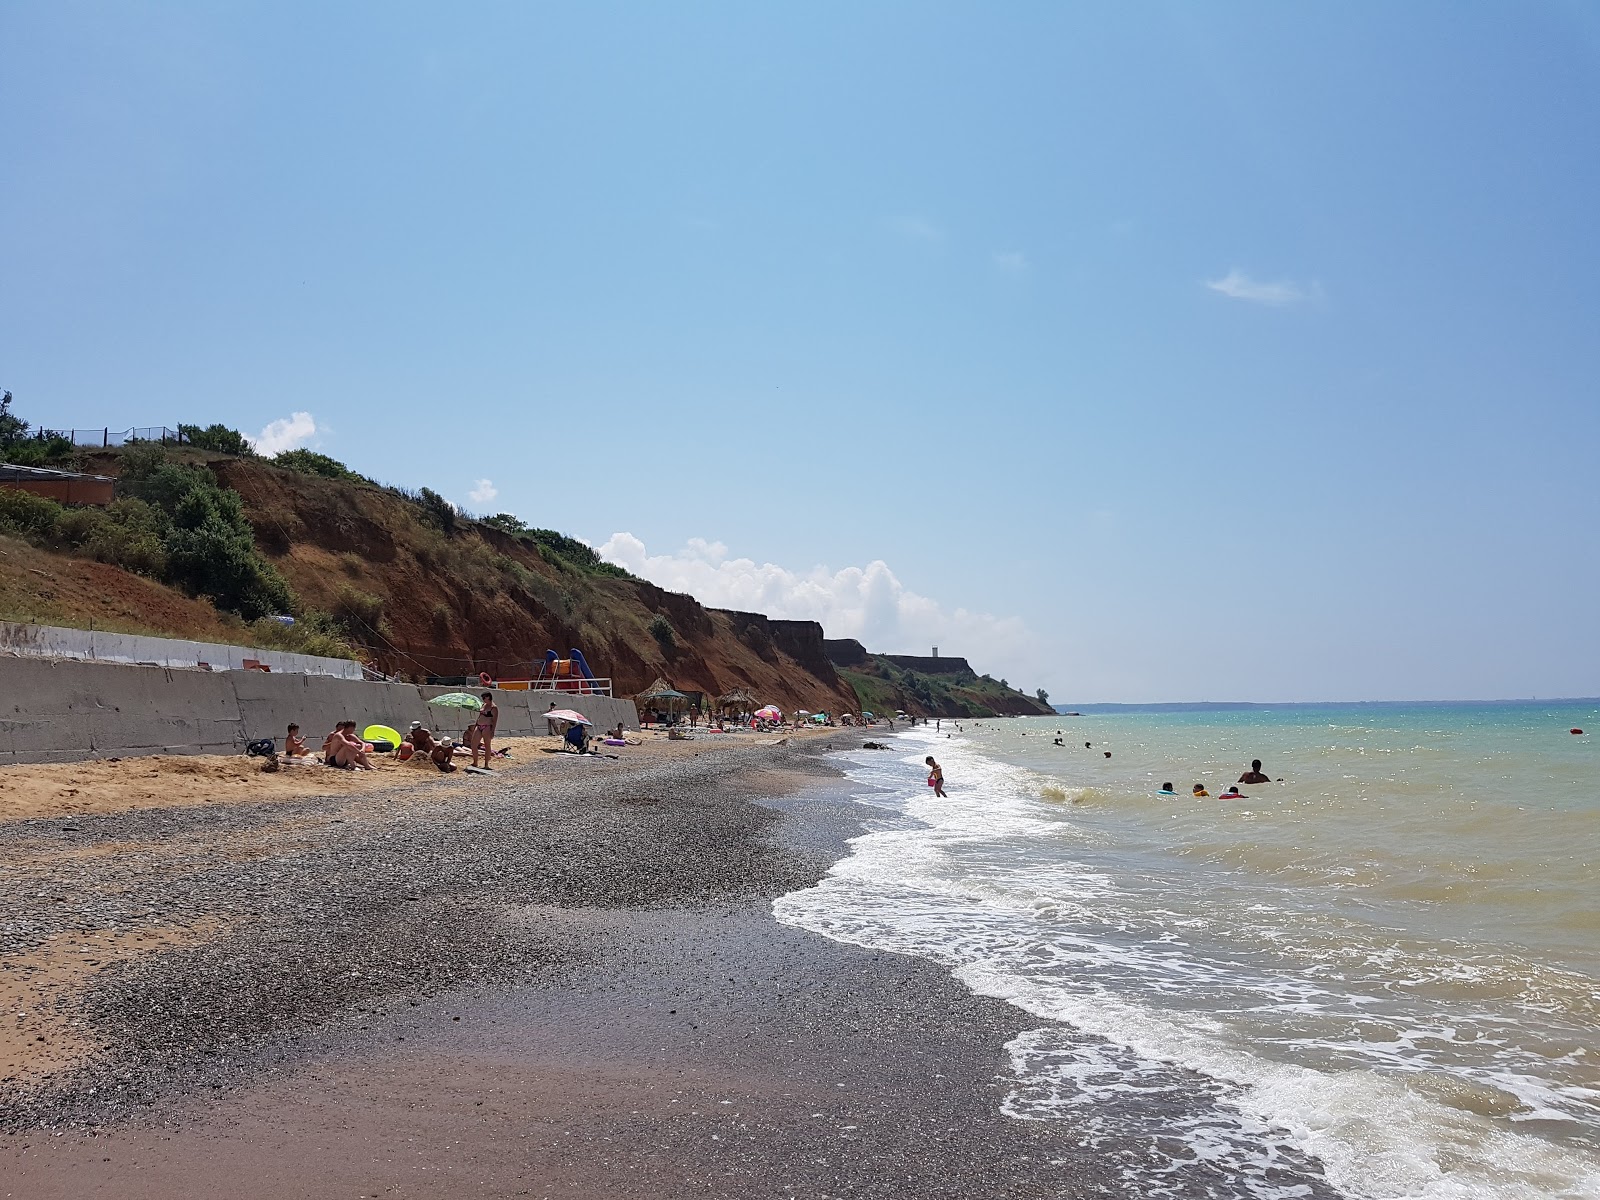 Beregovoe beach'in fotoğrafı geniş plaj ile birlikte